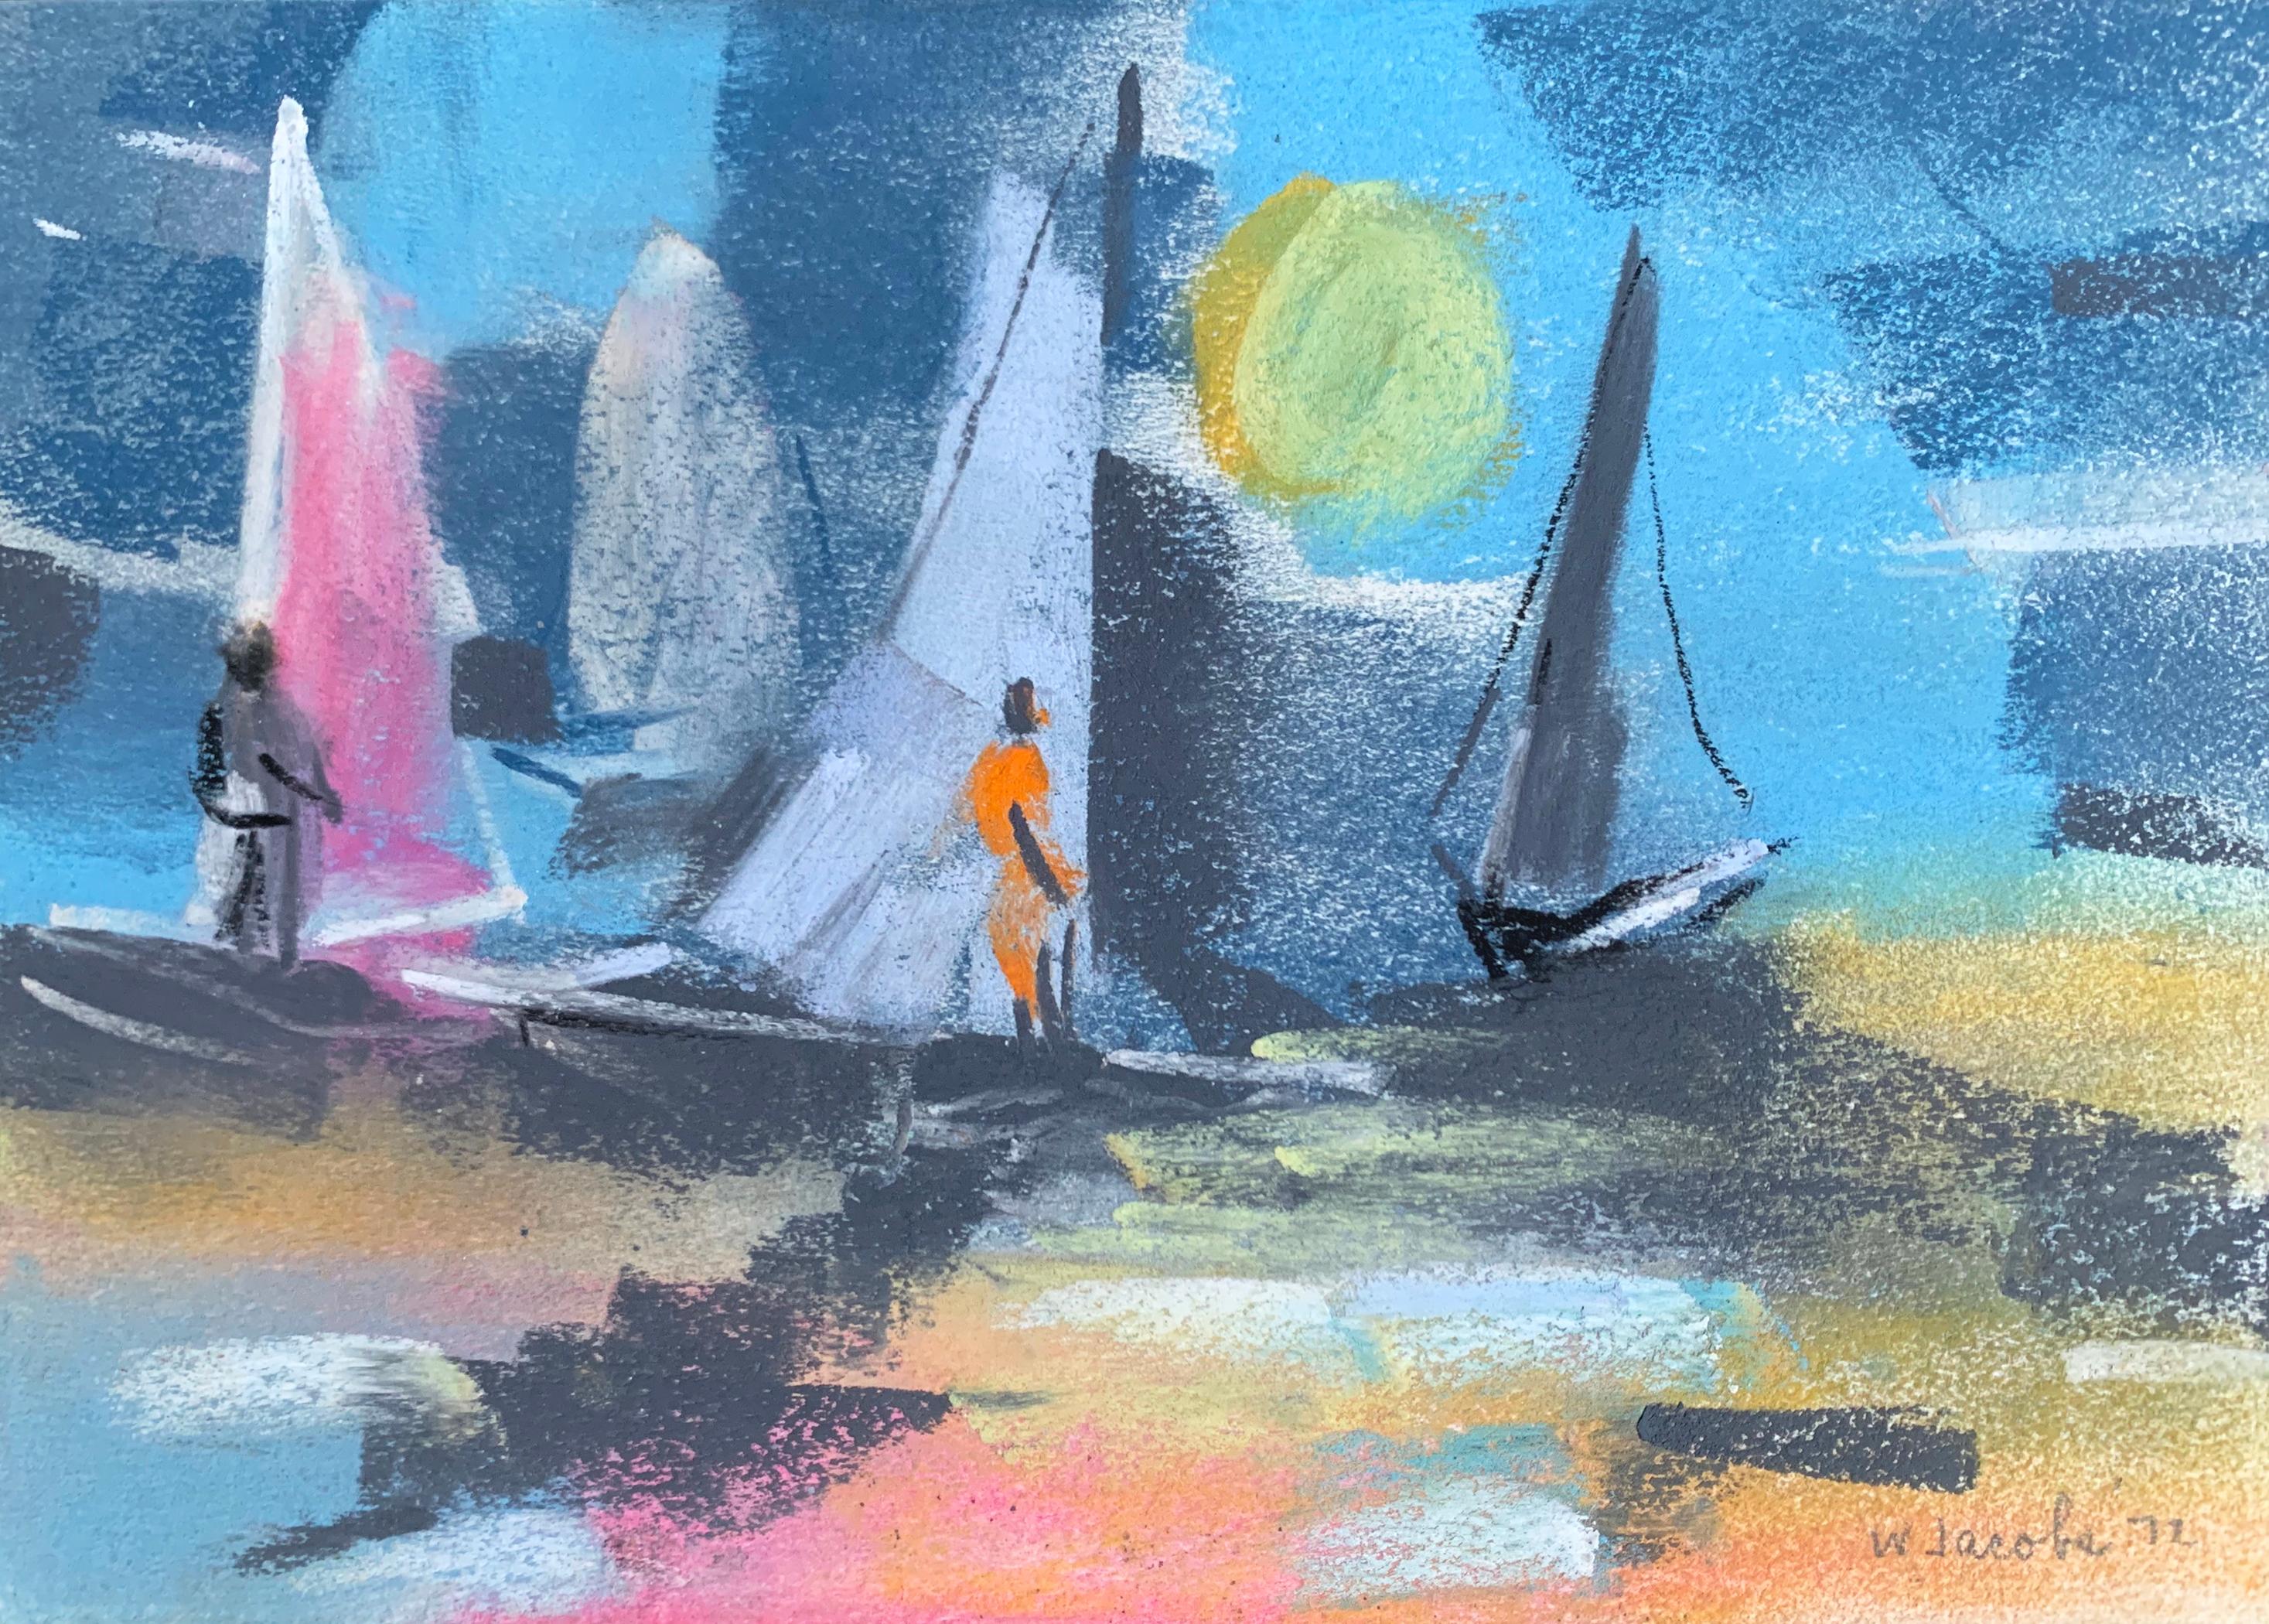 William Jacobs « Wind surfing at Sunset » (Surfant au coucher du soleil), pastel original sur papier